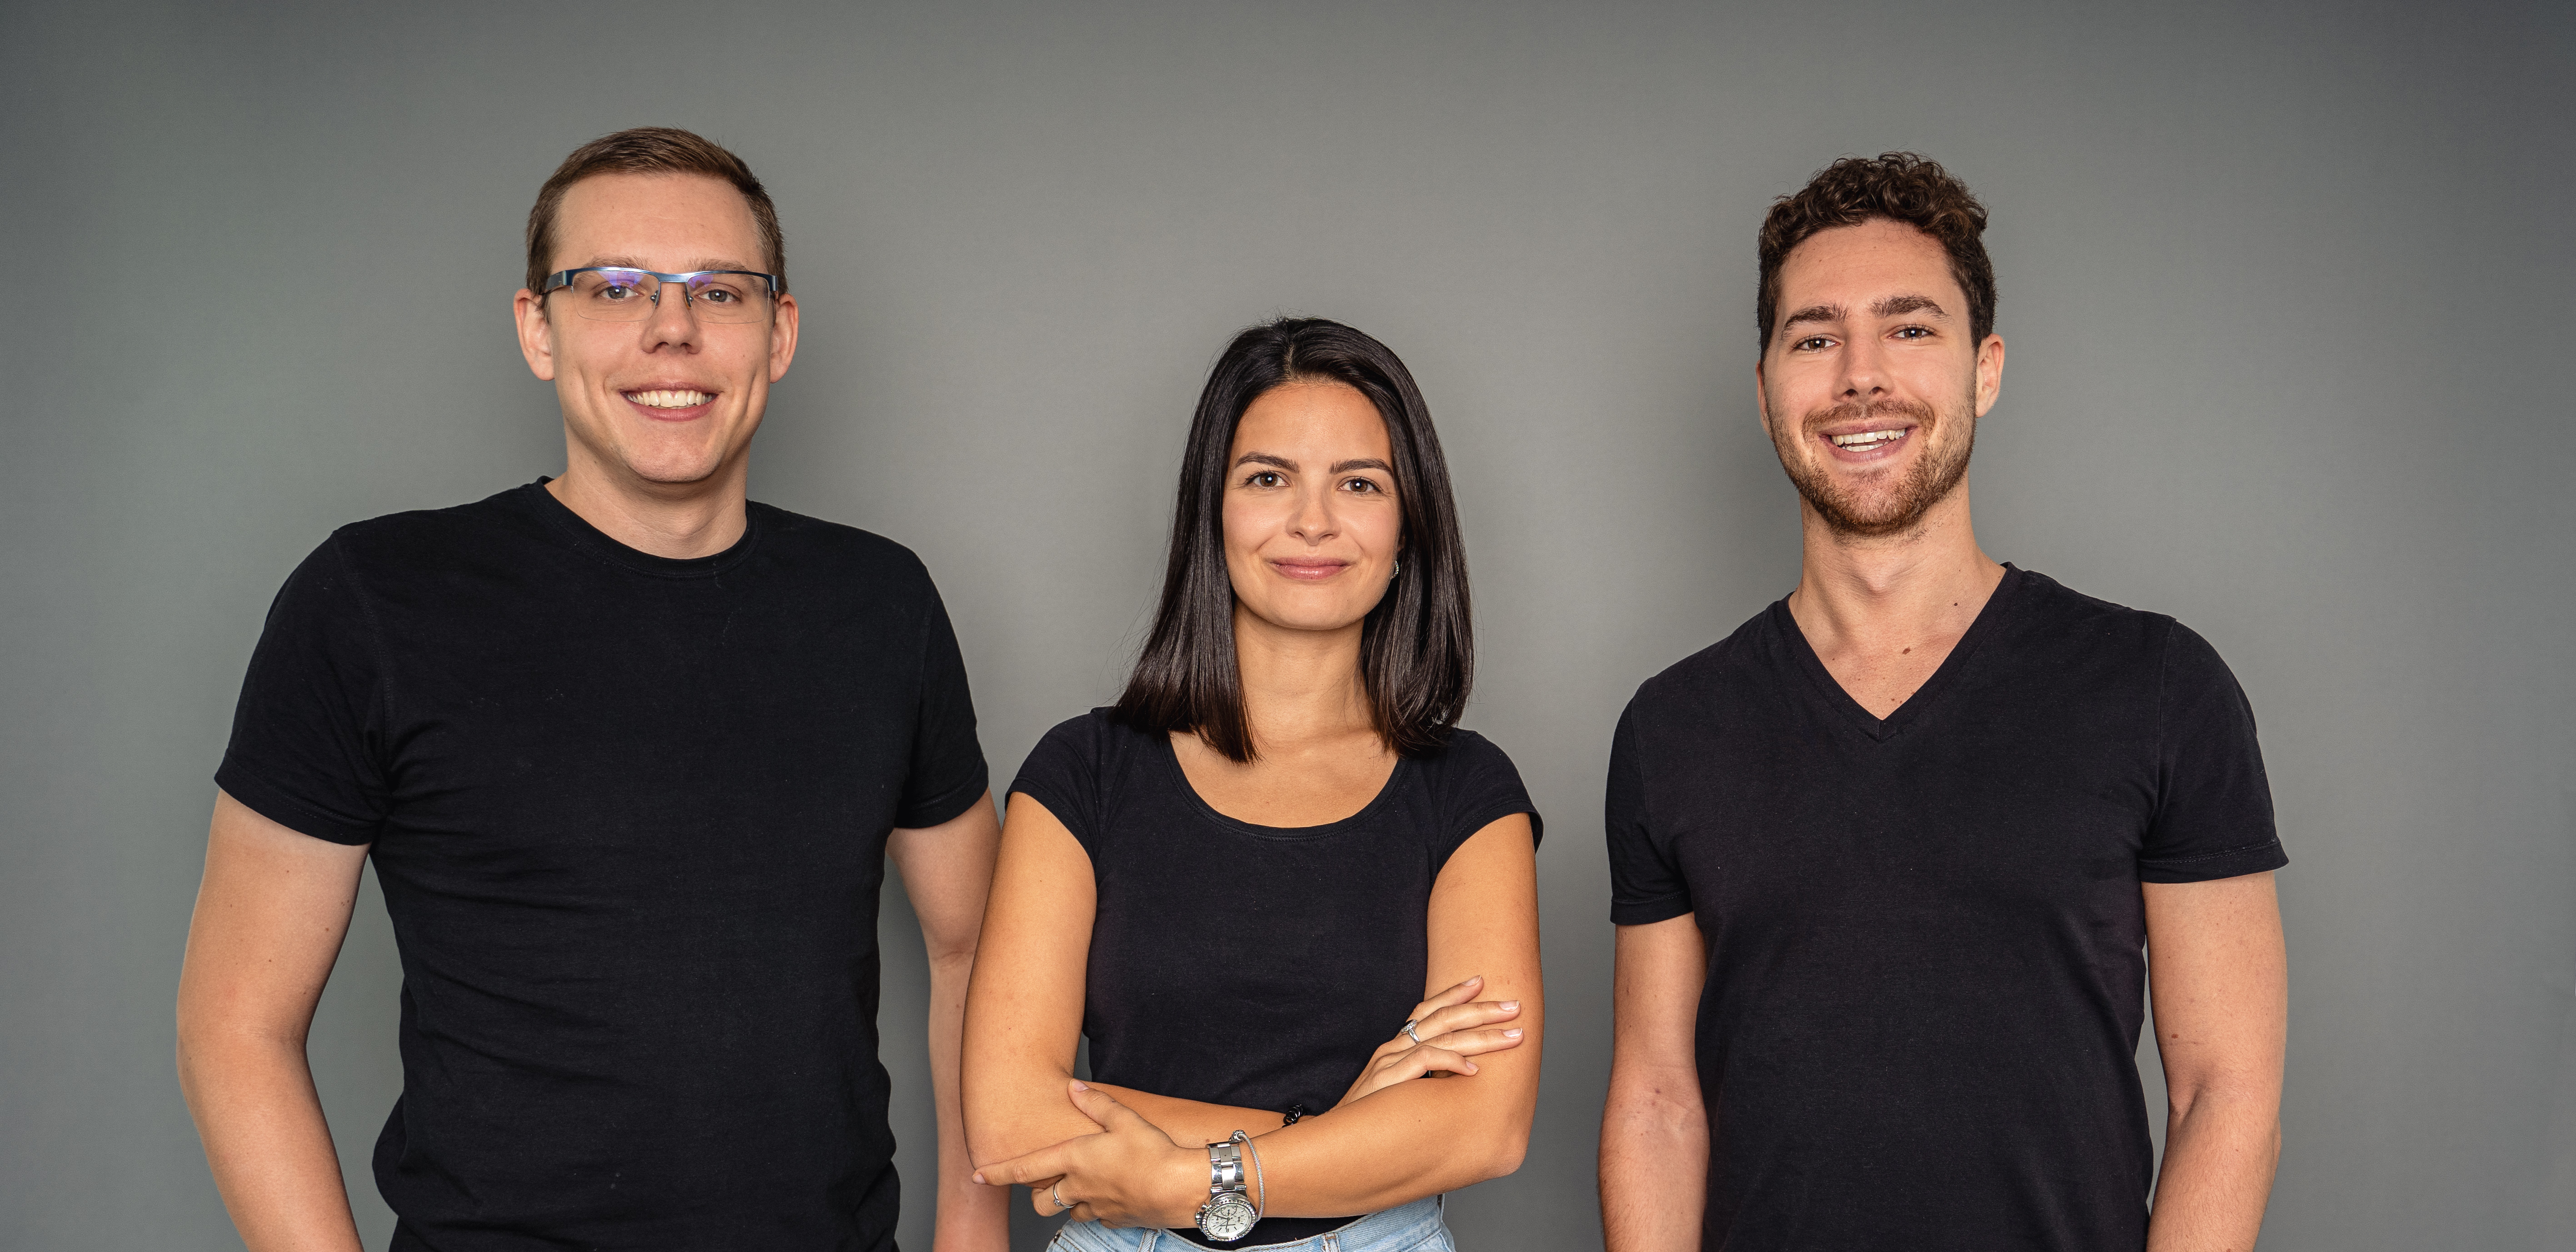 Zwei junge Männer und eine junge Frau im schwarzen T-Shirt. Sie sind das Team von living brain, einem Start-up, das sich mit virtueller Realität bei kognitiven Erkrankungen befasst.